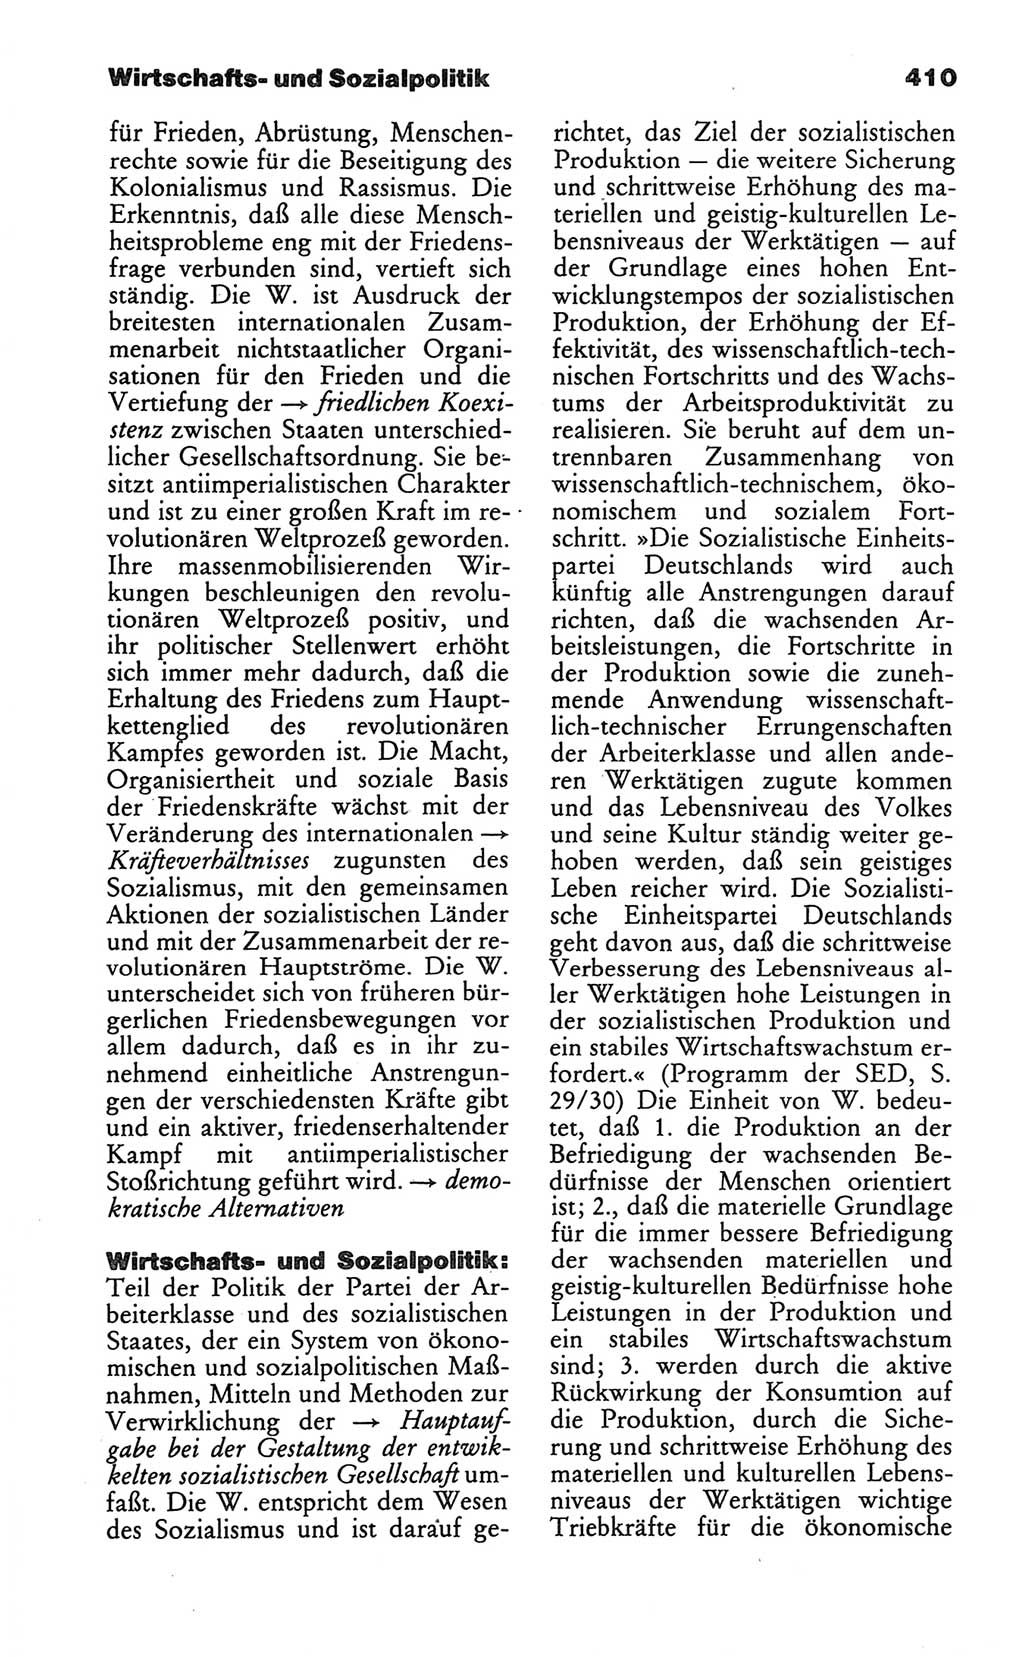 Wörterbuch des wissenschaftlichen Kommunismus [Deutsche Demokratische Republik (DDR)] 1986, Seite 410 (Wb. wiss. Komm. DDR 1986, S. 410)